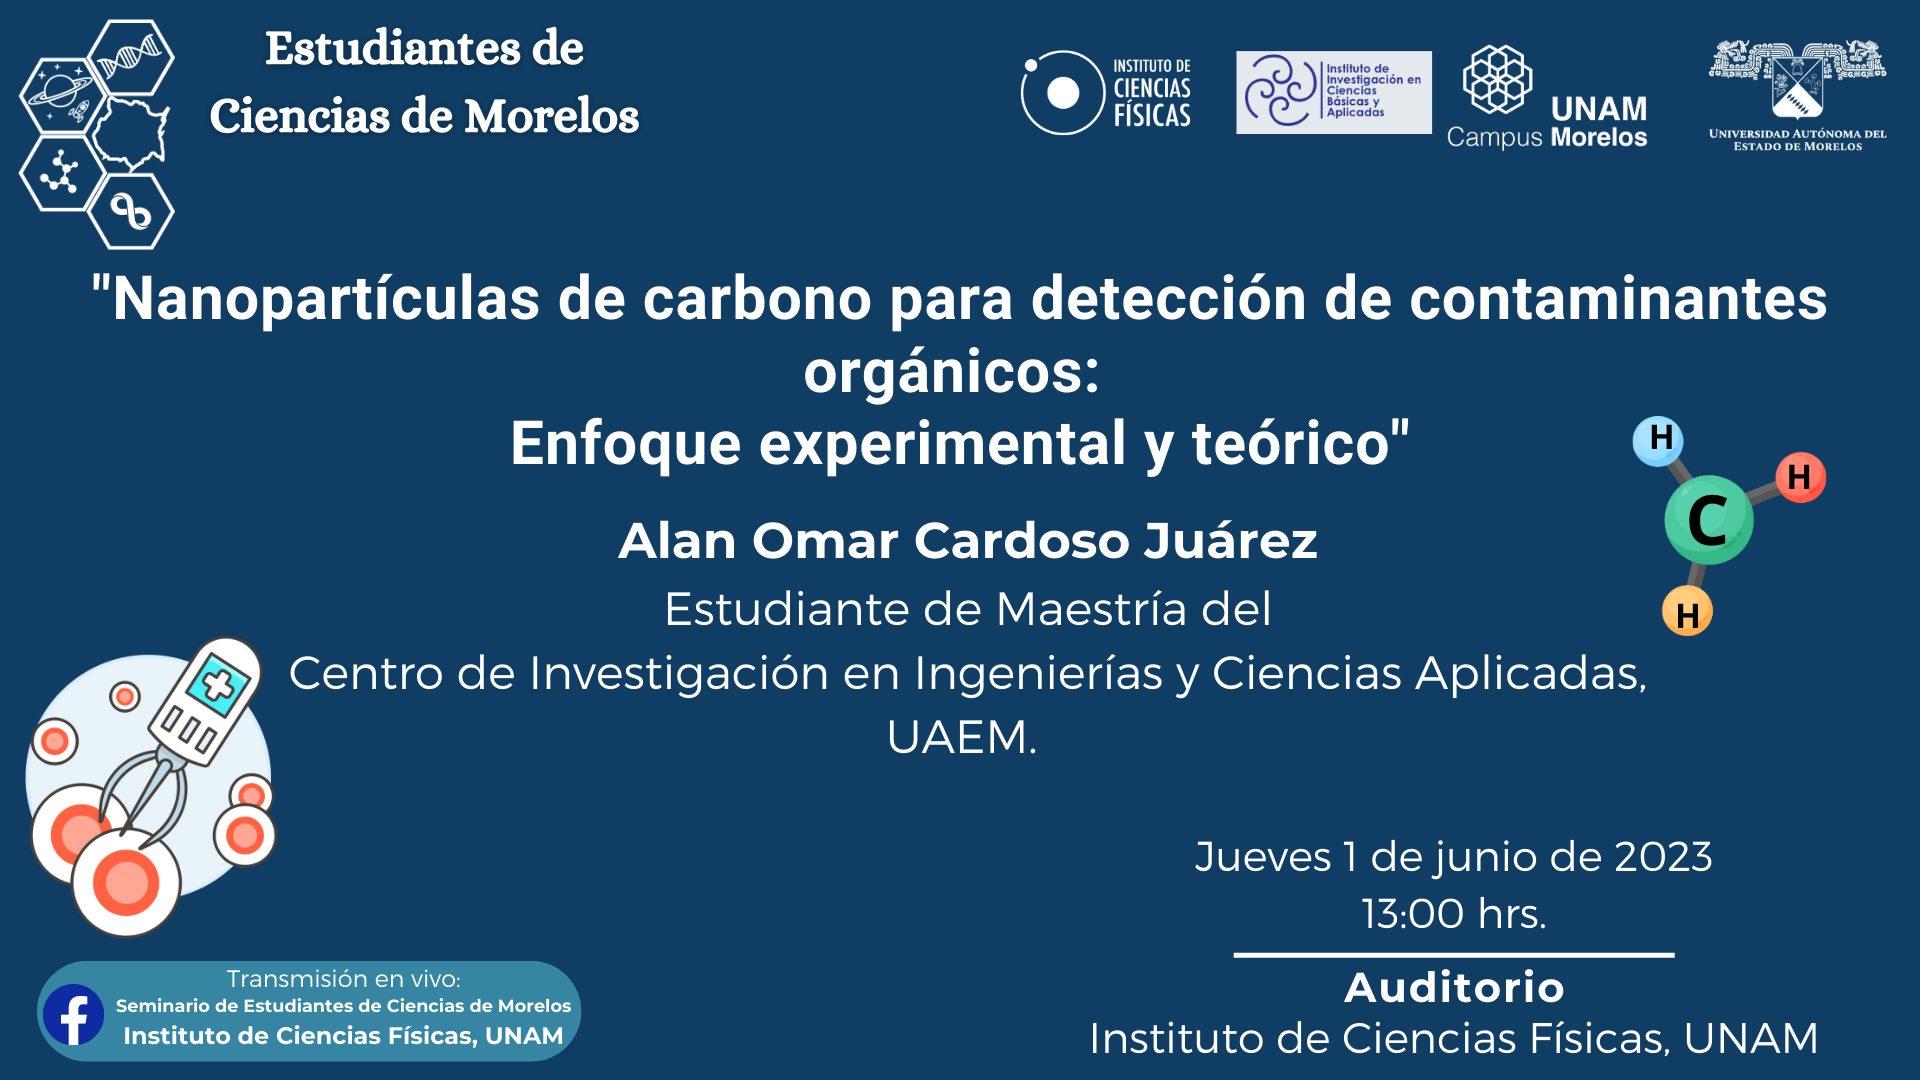 "Nanopartículas de Carbono para detección de contaminantes orgánicos: Enfoque experimental y teórico"